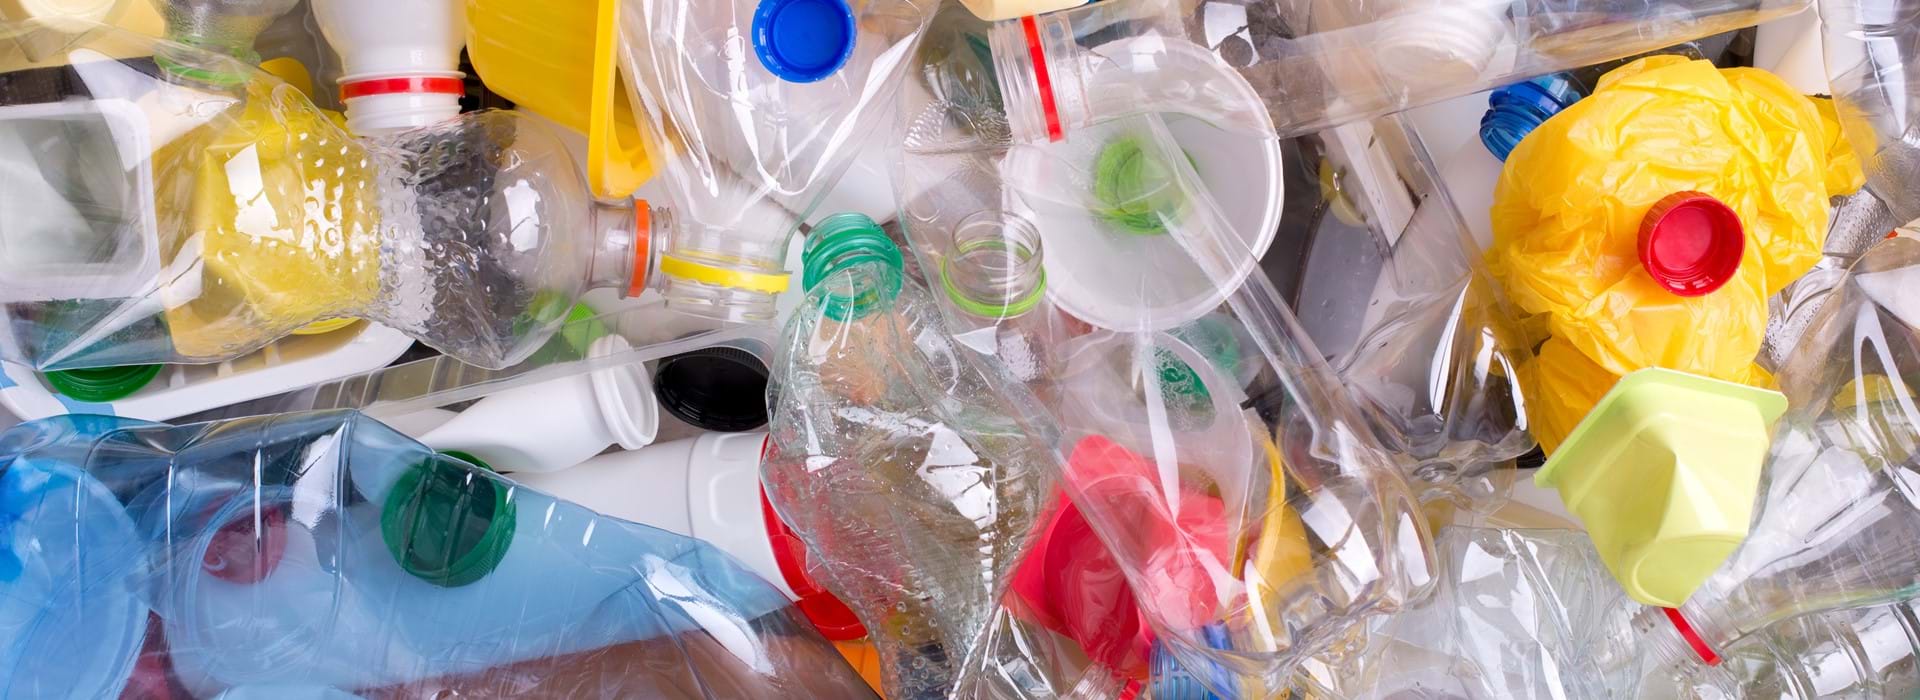 Oproep beleggers: drastische maatregelen plasticgebruik door bedrijven